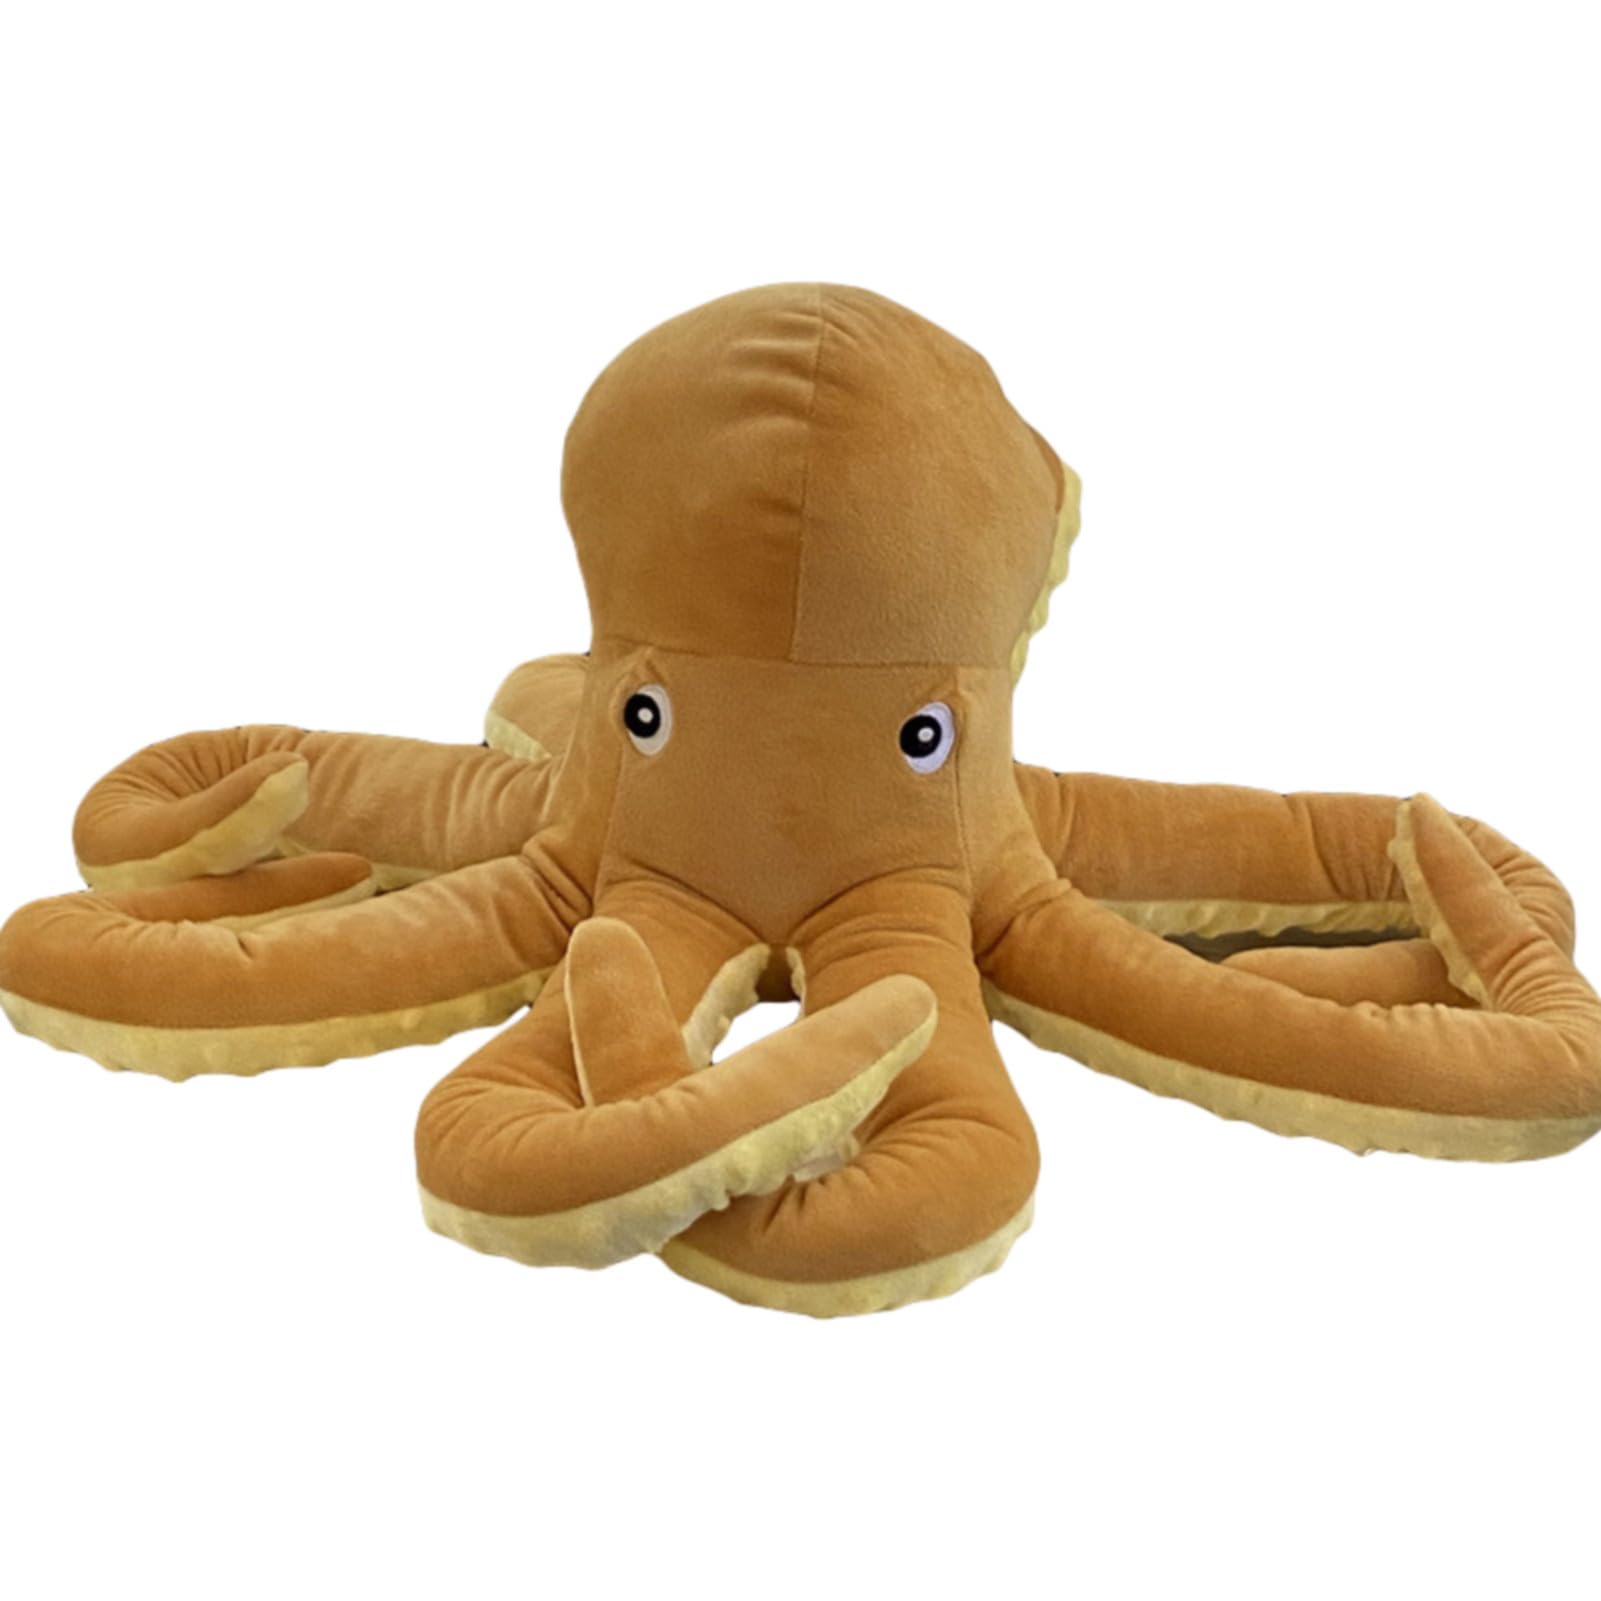 CULASIGN Oktopus Plüschtier, Plush Octopus Kreative Plüschtier Oktopus Kissen, Octopus Spielzeug Gefüllte Puppen,Weiches Plüsch Geschenk für Kinder, Familie, Freunde (60cm)